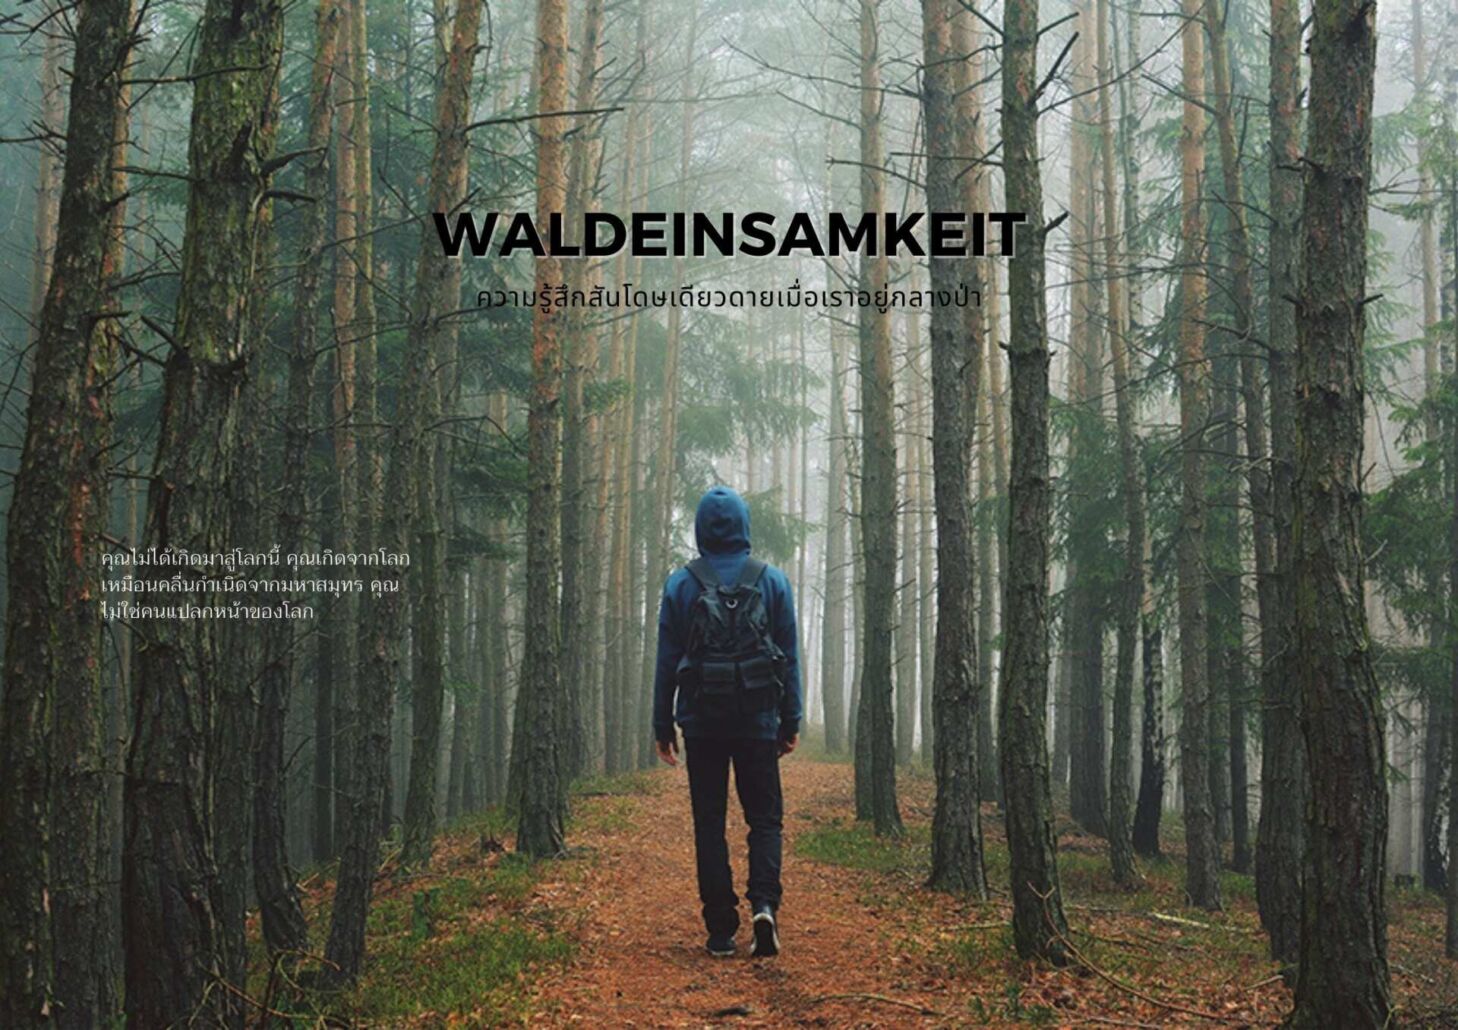 Waldeinsamkeit ความรู้สึกสันโดษเดียวดายเมื่อเราอยู่กลางป่า